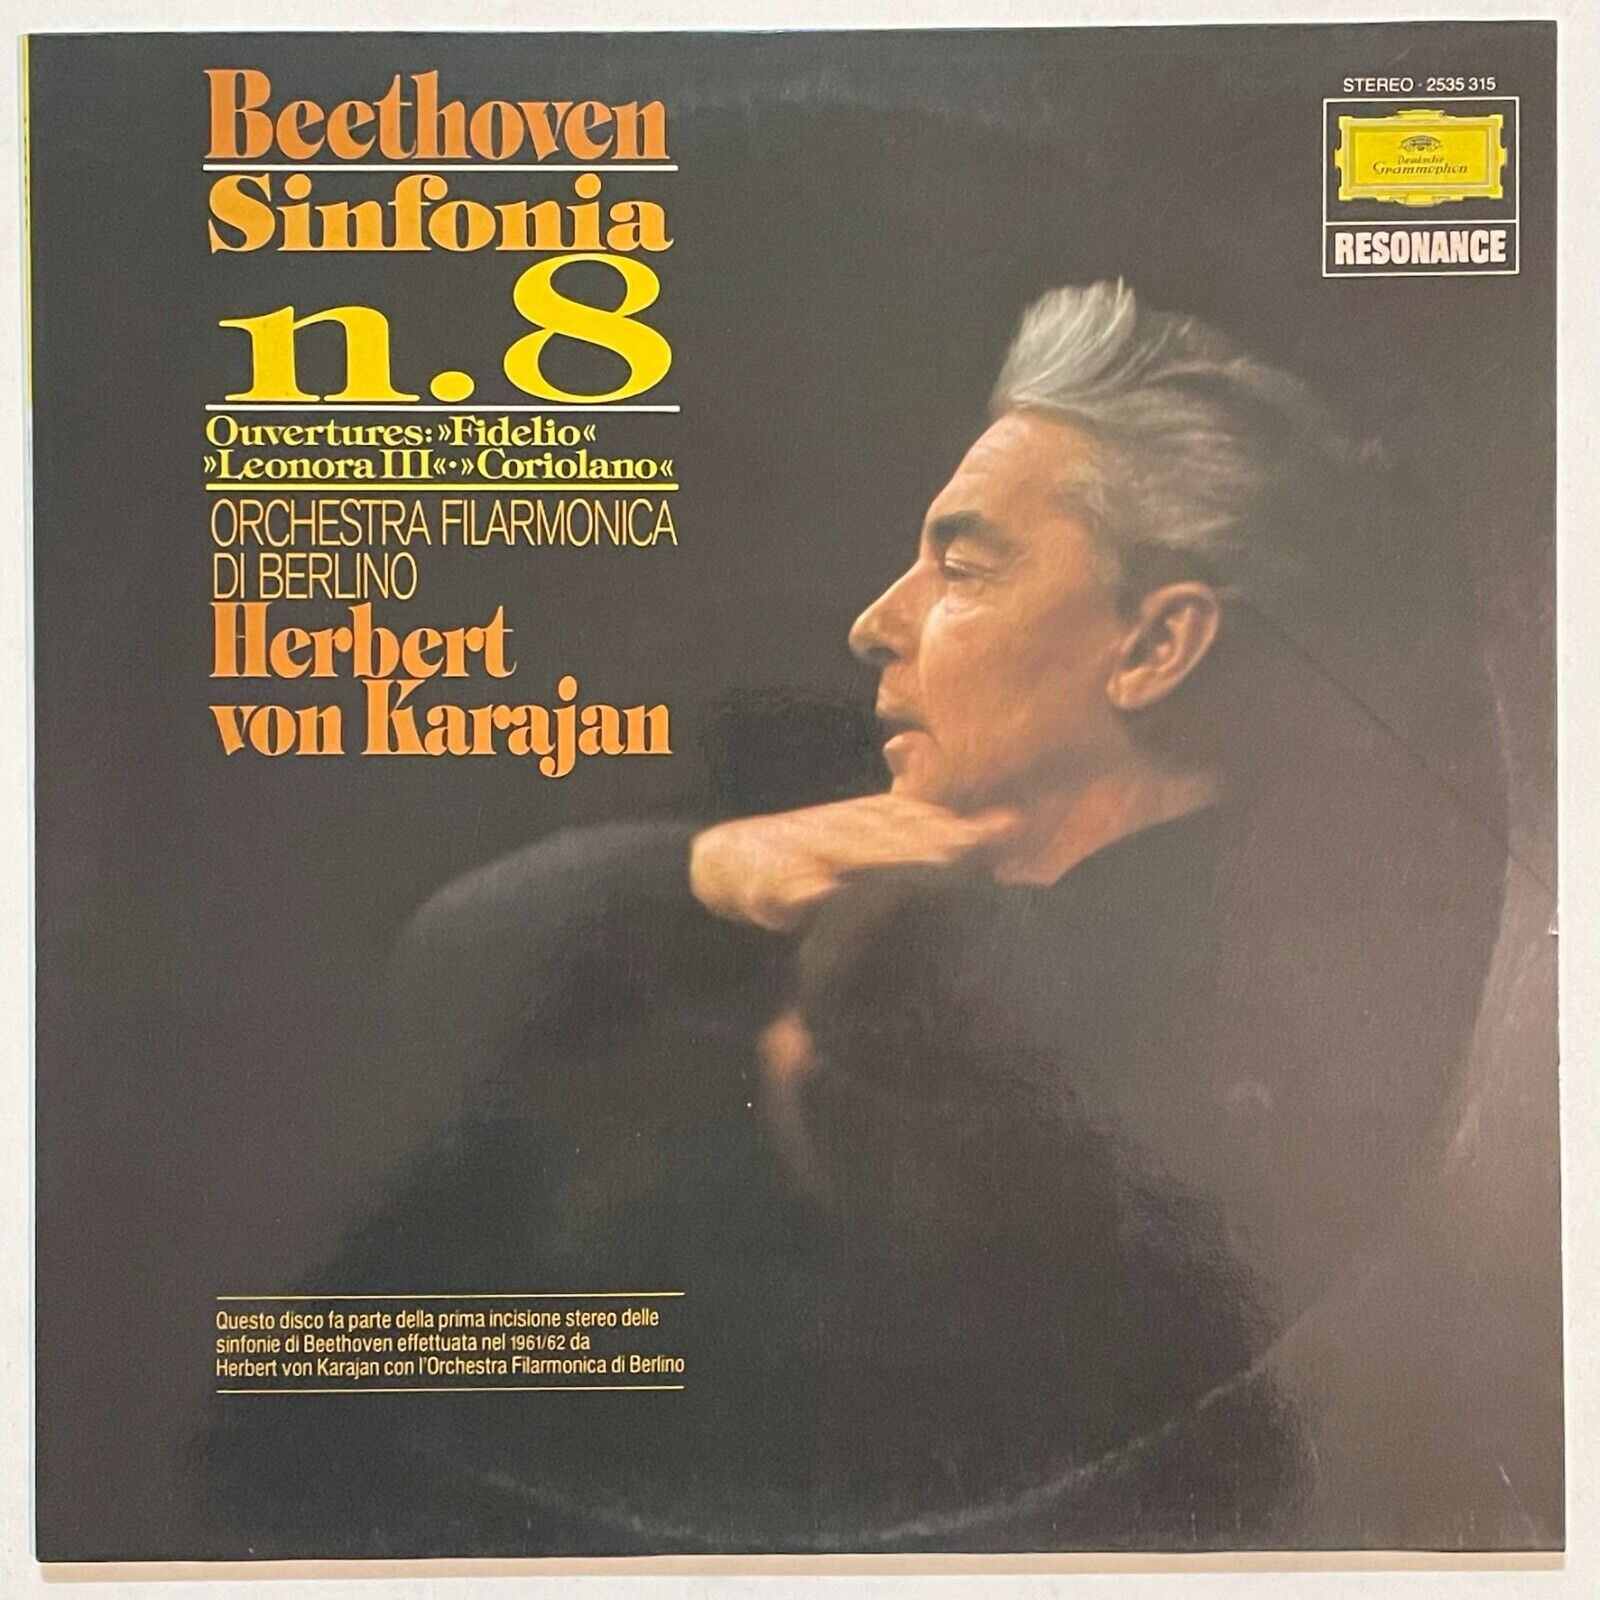 Beethoven sinfonia N.8 Herbert Von Karajan, vinyl LP [unplayed]